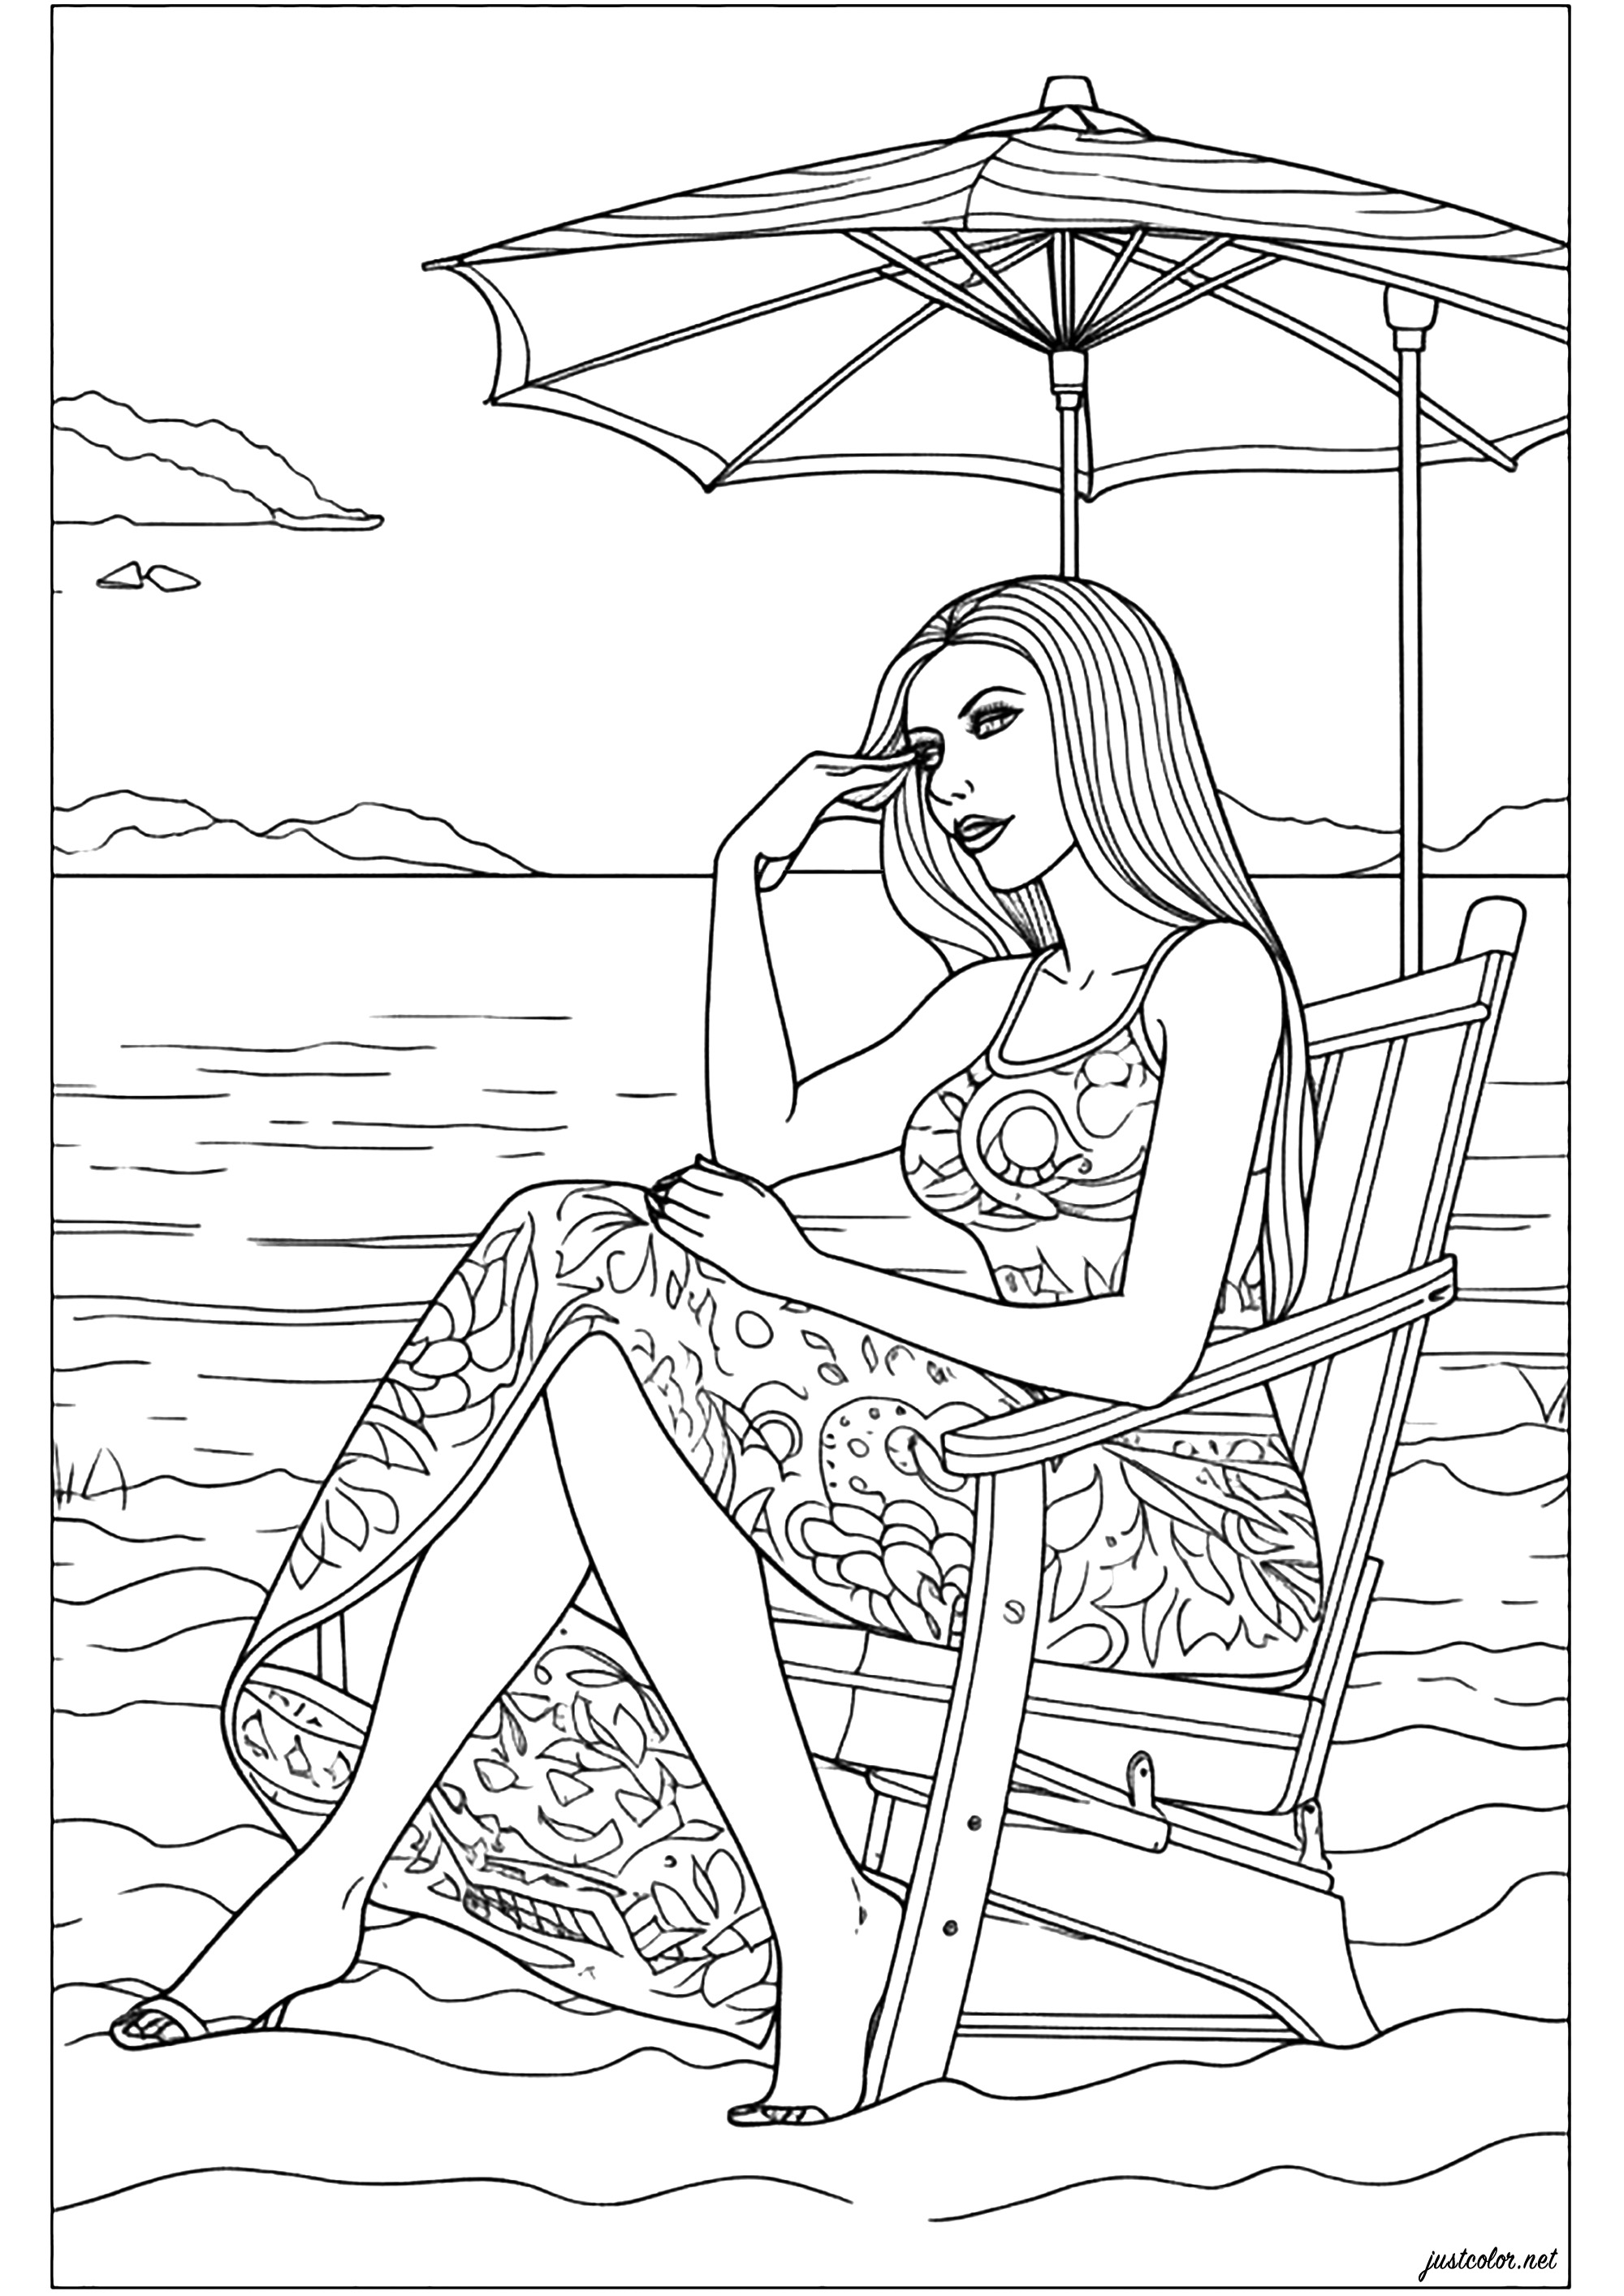 Frau sitzt am Strand, elegant und nachdenklich. Ein originelles Malbuch, das Lust auf Urlaub macht, auf einen ruhigen Strand, wo man nur dem Rauschen der Wellen lauscht...